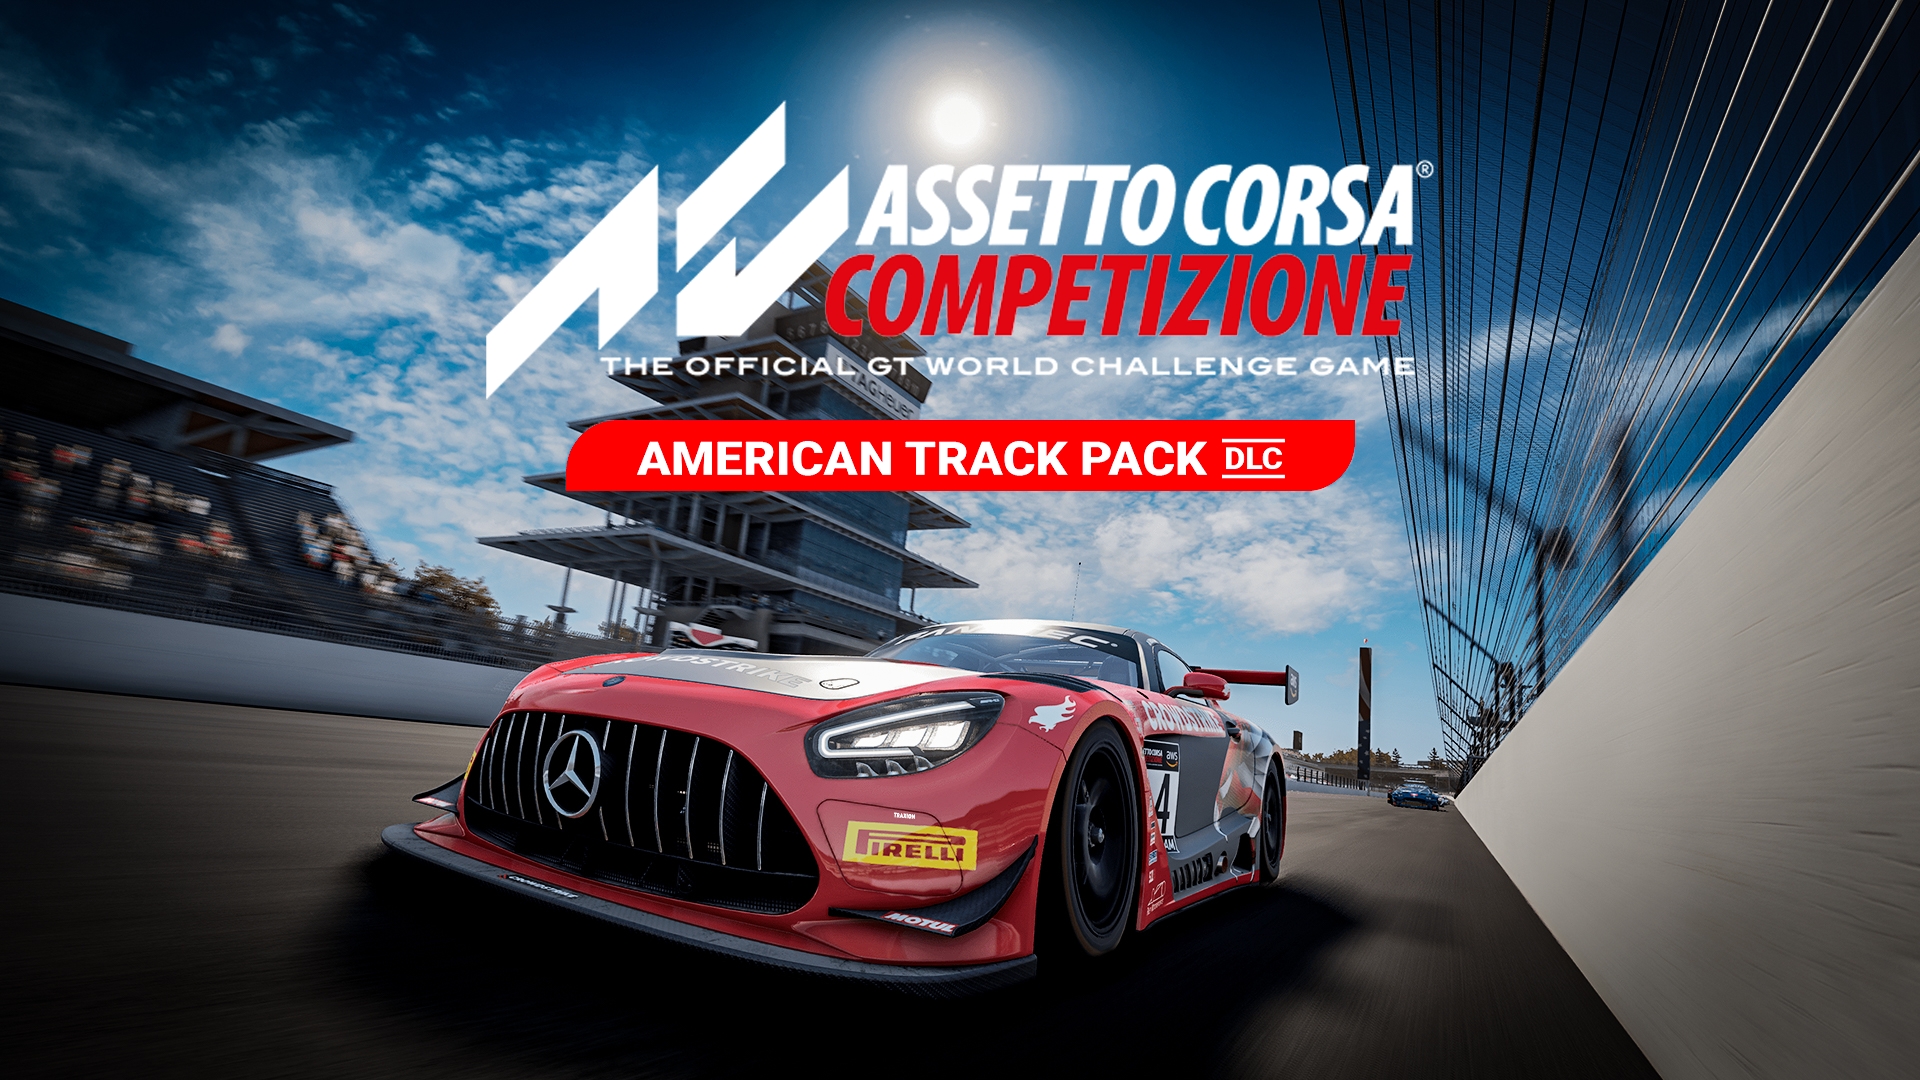 Comprar Assetto Corsa Competizione - The American Track Pack Steam